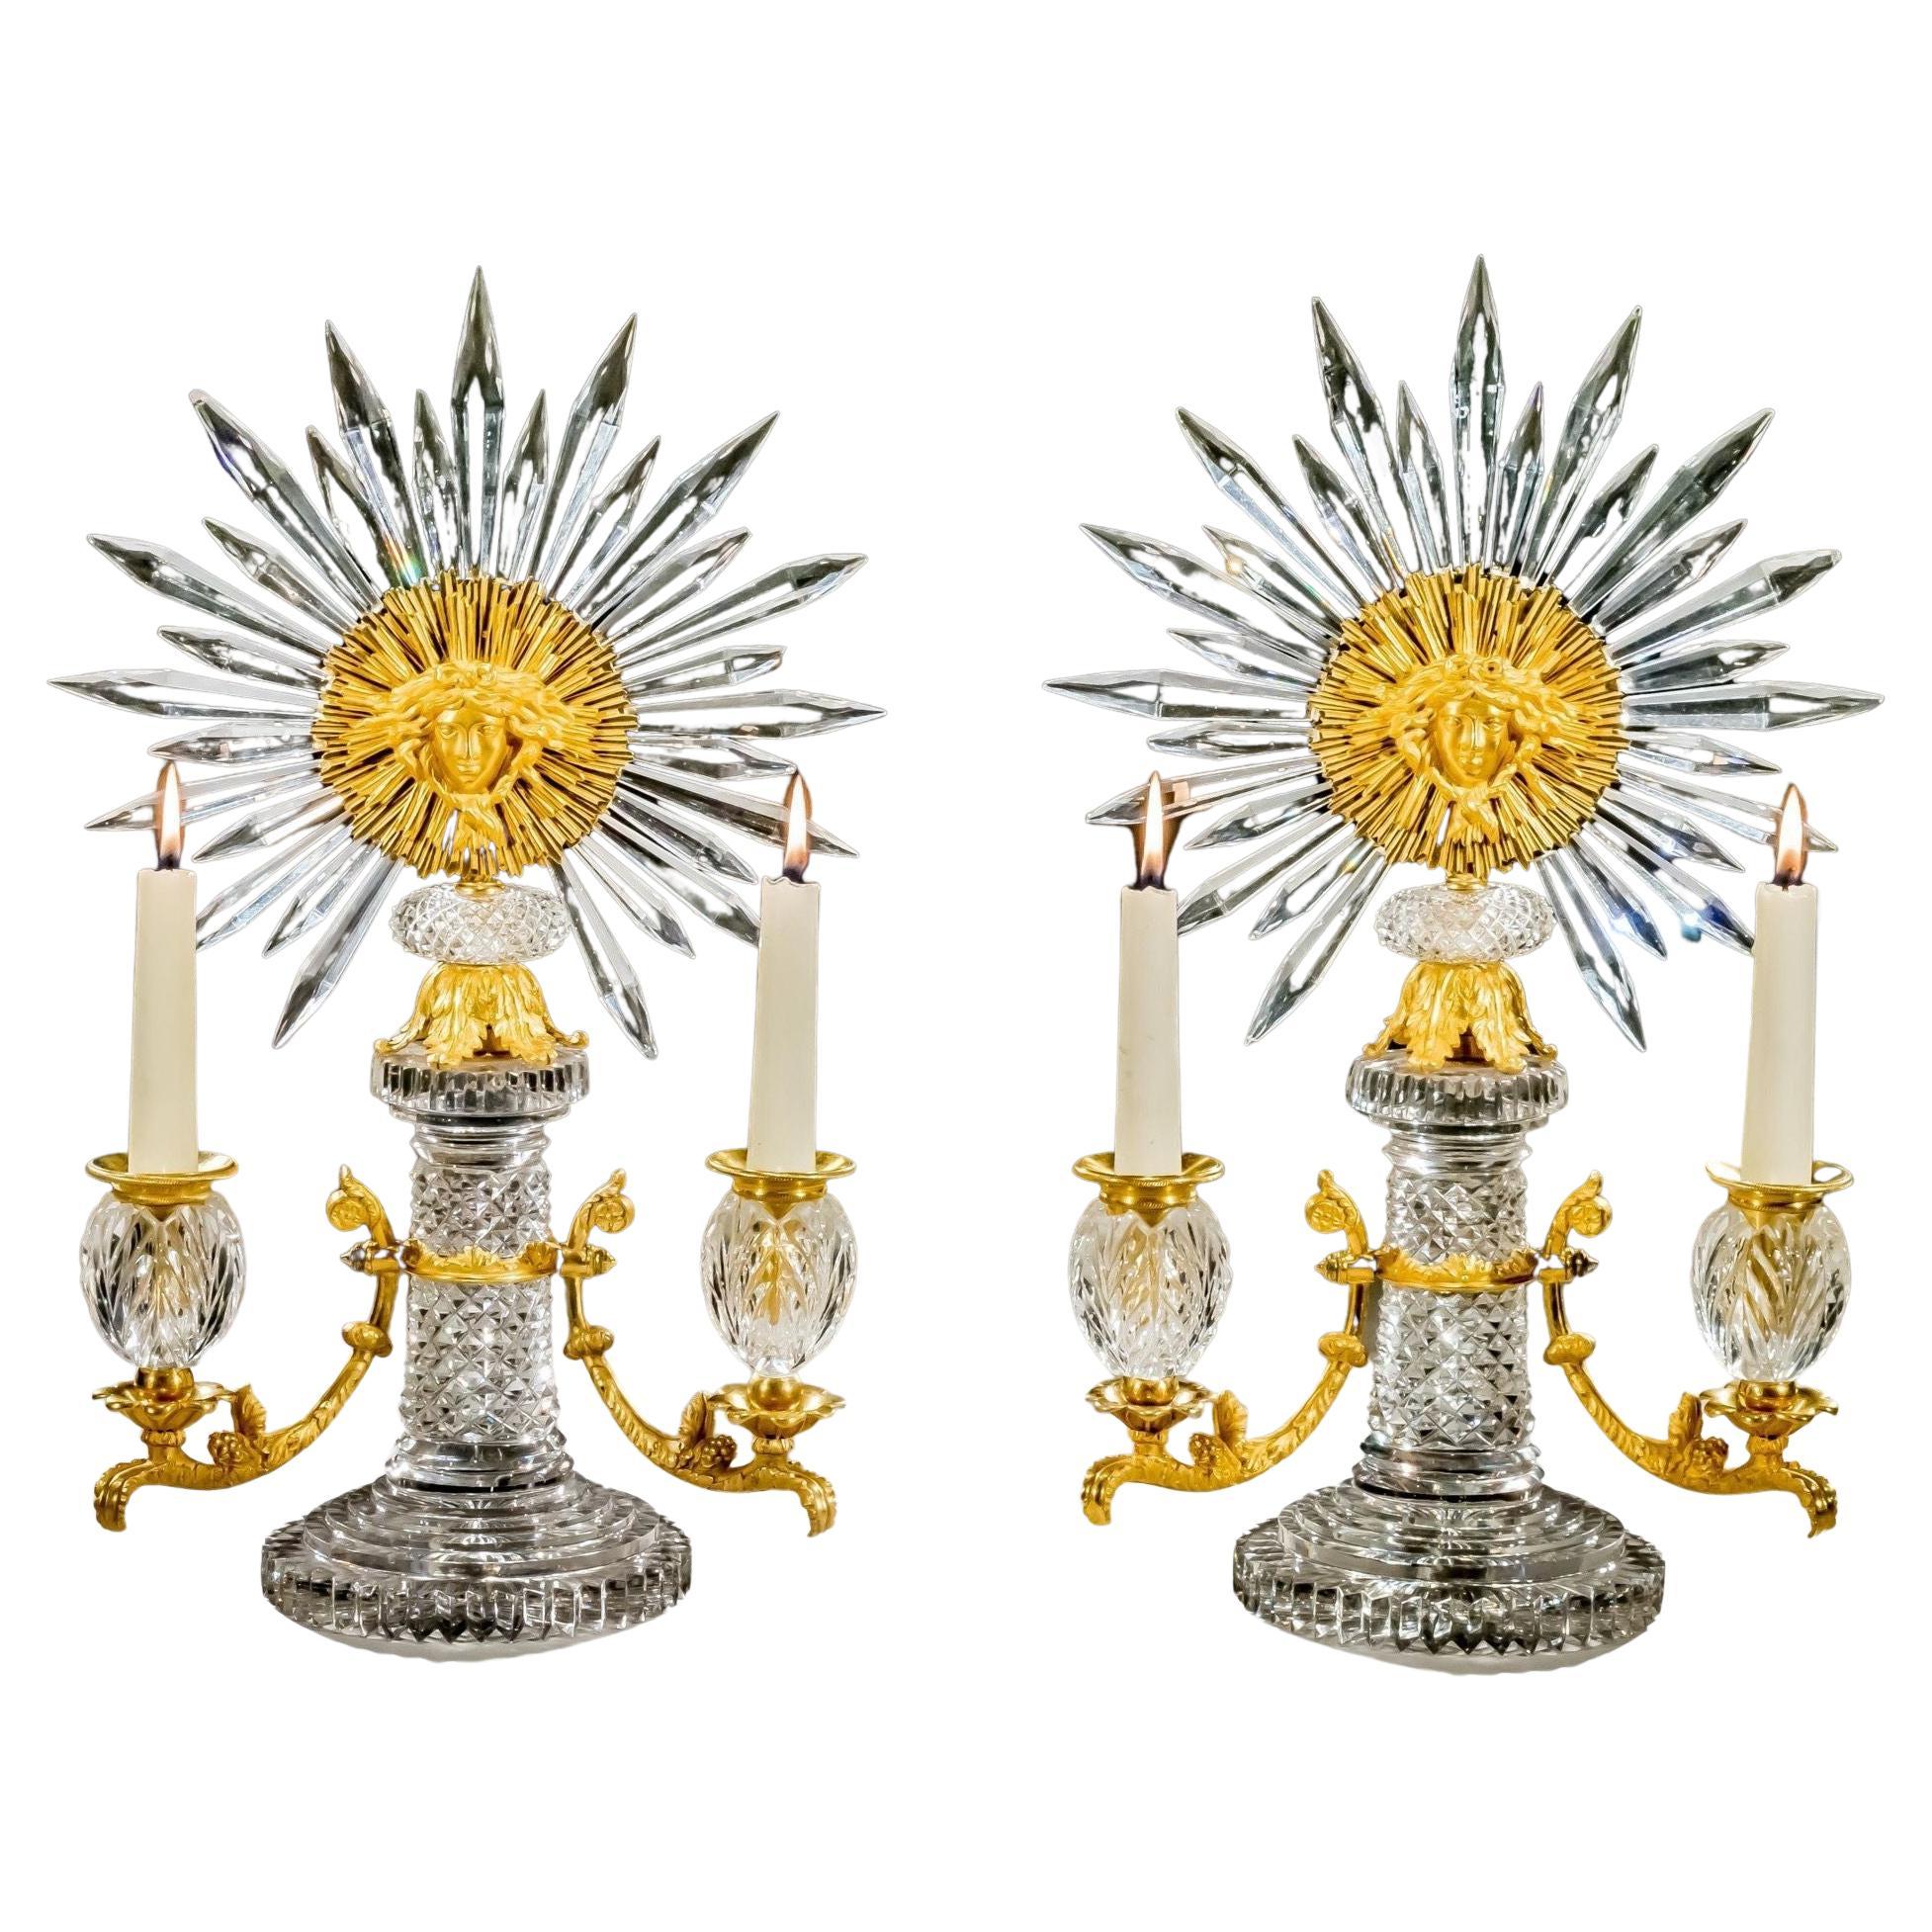 Rare paire de candélabres Regency Sunburst attribuée à Apsley Pellett